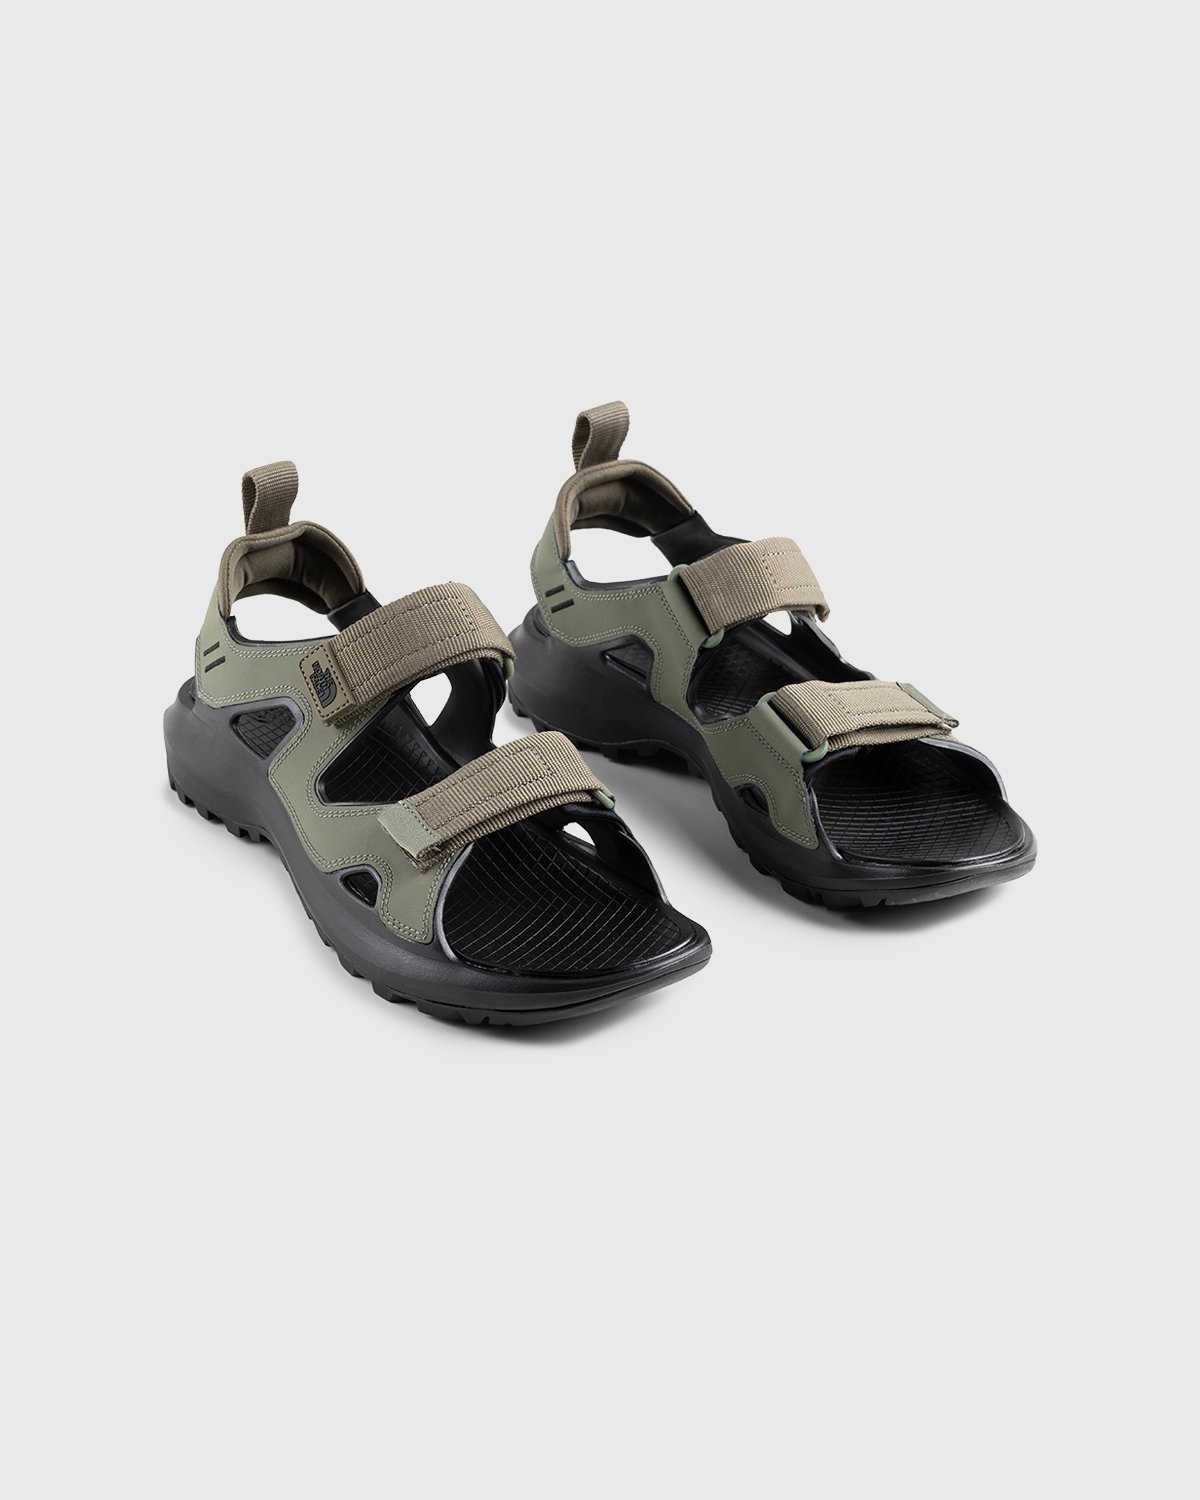 The North Face – Hedgehog Sandal III Burnt Olive Green/Black - Sandals - Green - Image 4